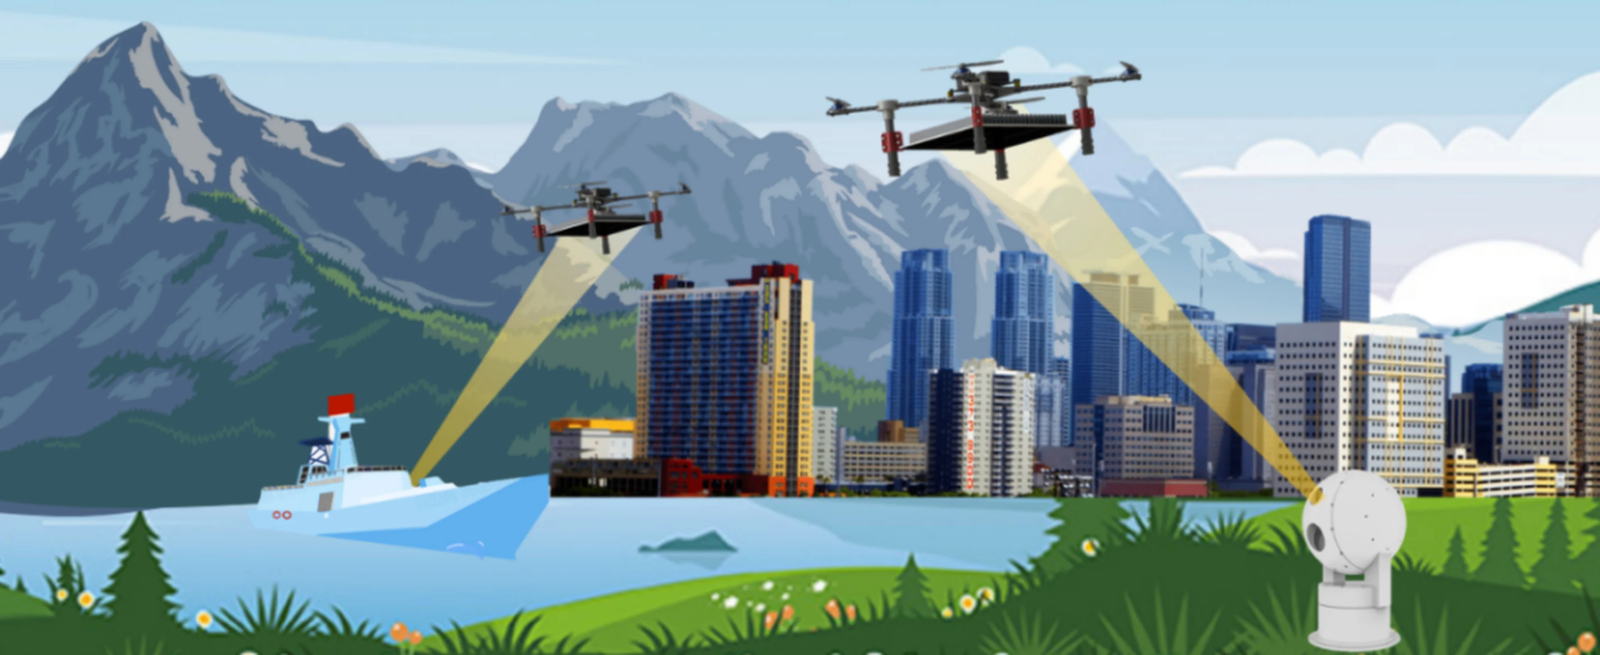 Sur cette illustration, on peut voir le rayon laser impacter les drones pour leur délivrer de l’énergie afin de les maintenir en vol. © NPA